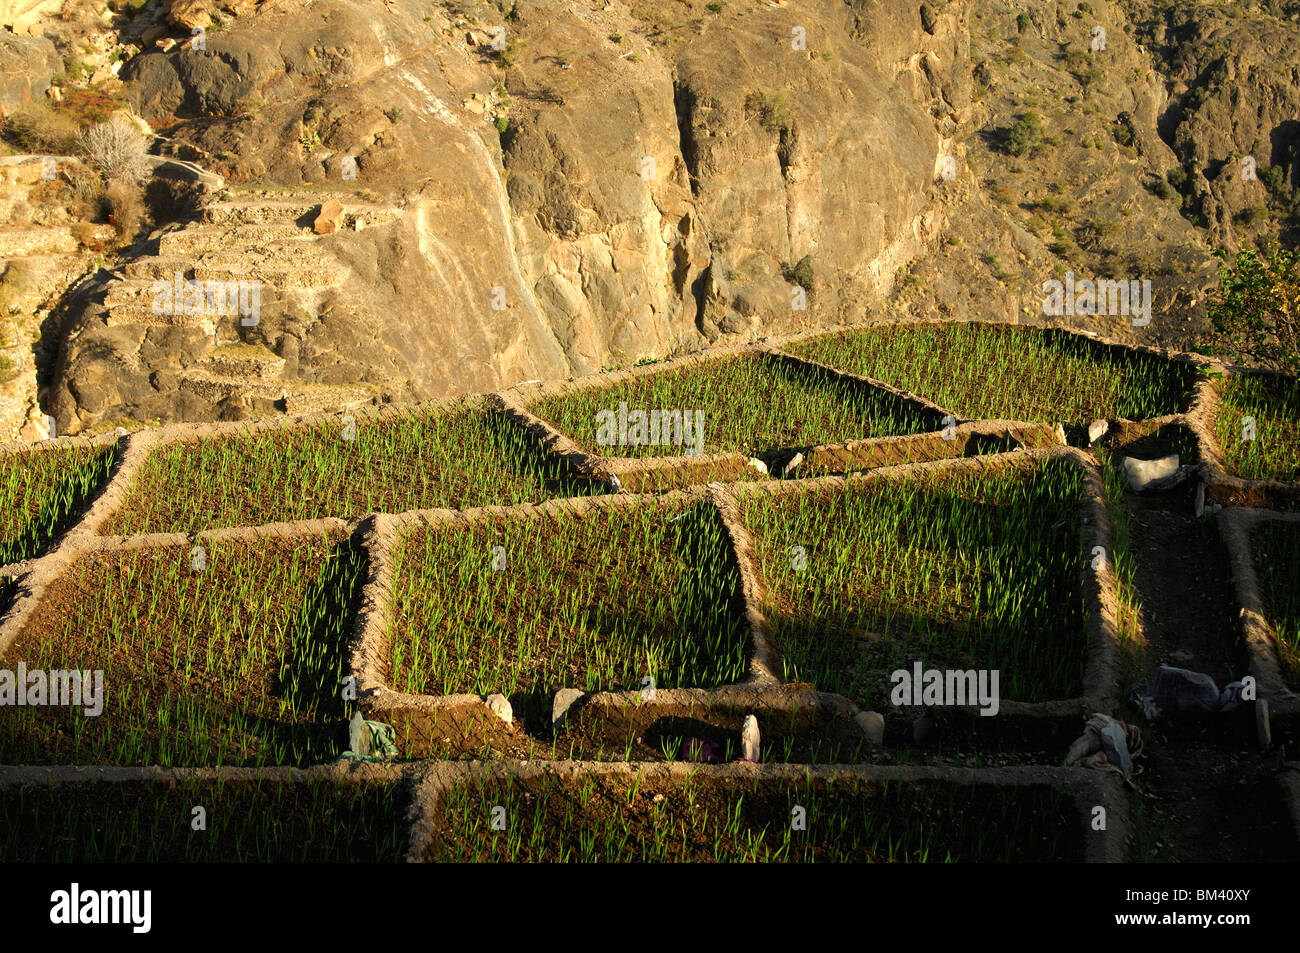 Des parcelles de petit grain au bord d'un canyon dans le village de cendres, Shirayjah Al Hajar mountains, Sultanat d'Oman Banque D'Images